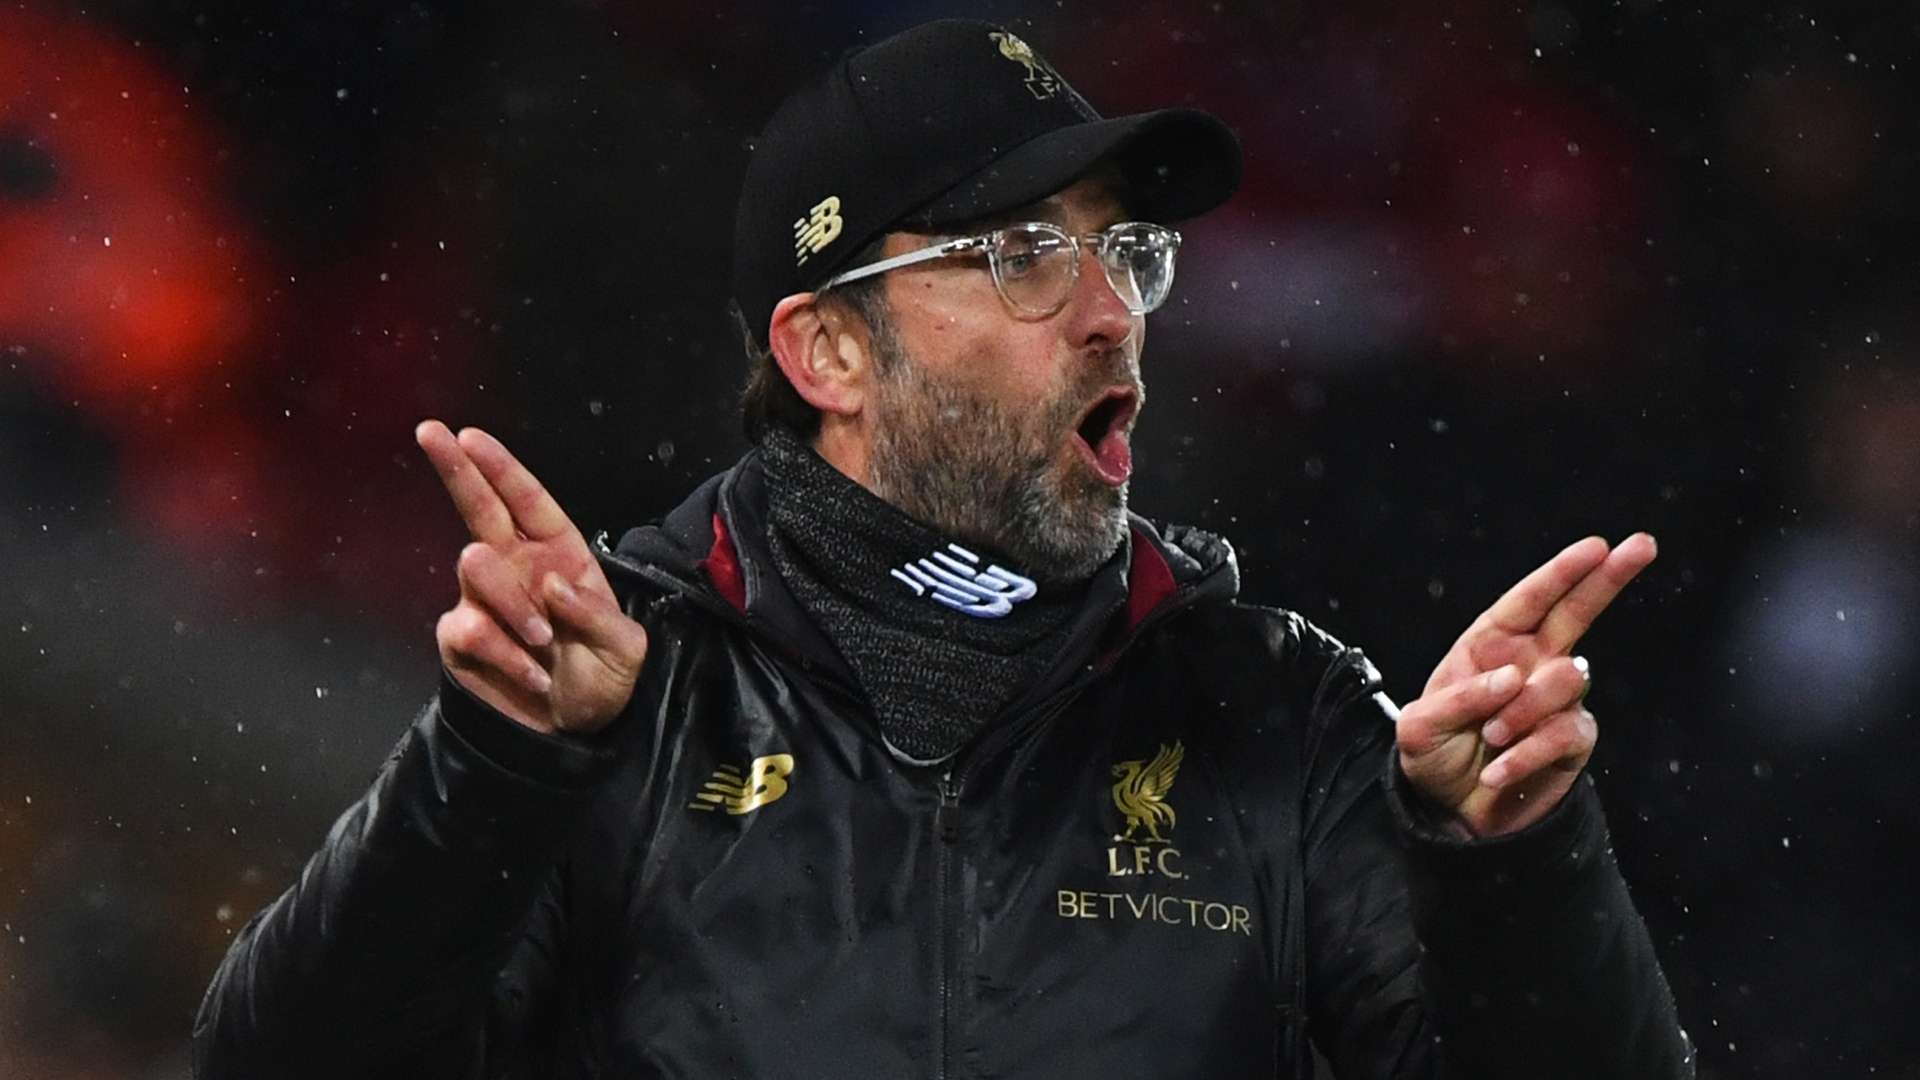 Jurgen Klopp Liverpool 2019